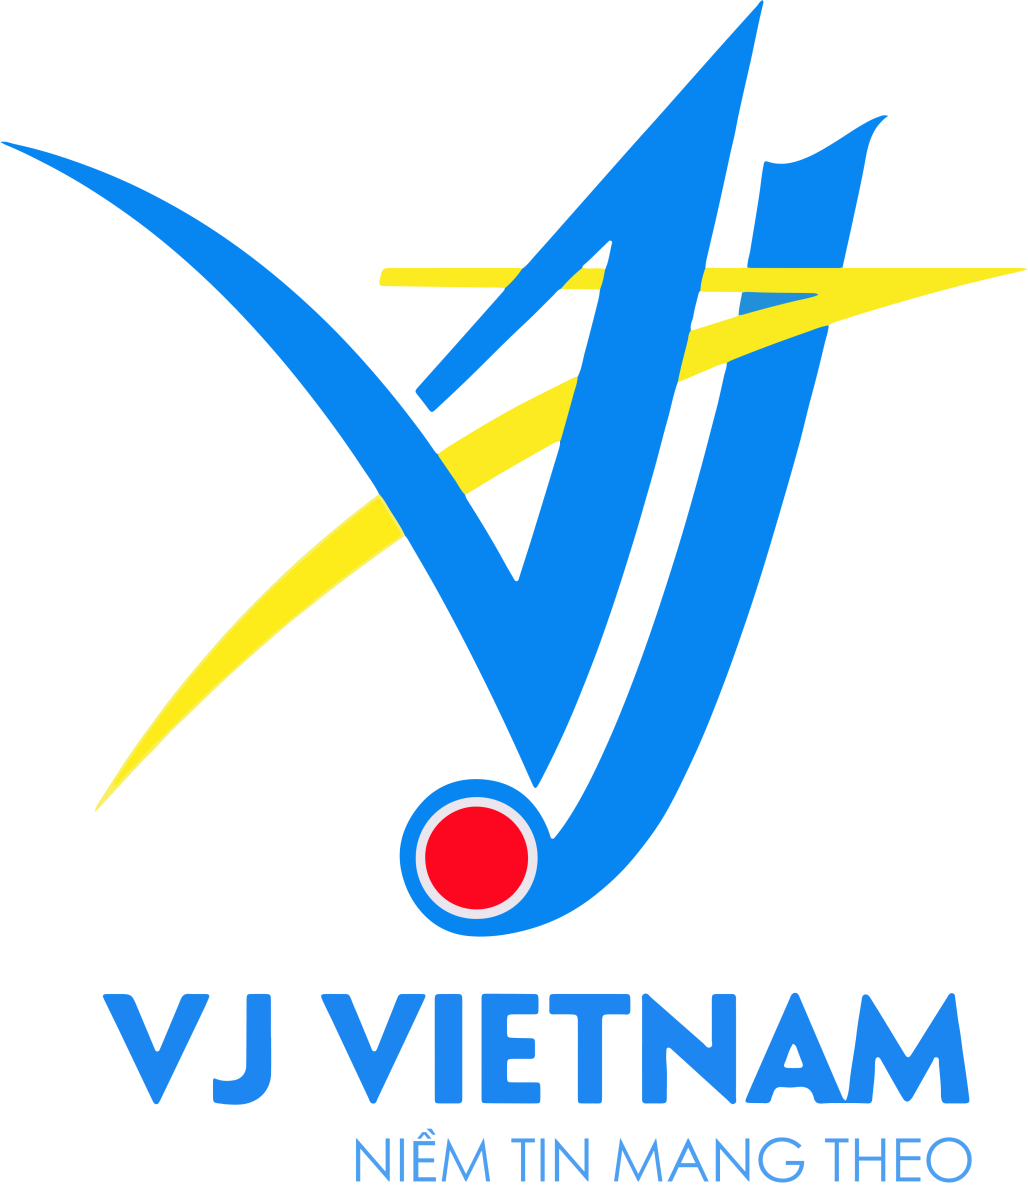 //hangkhongcantho.vn/files/images/logos/logo-vj-ko-nen-818.png